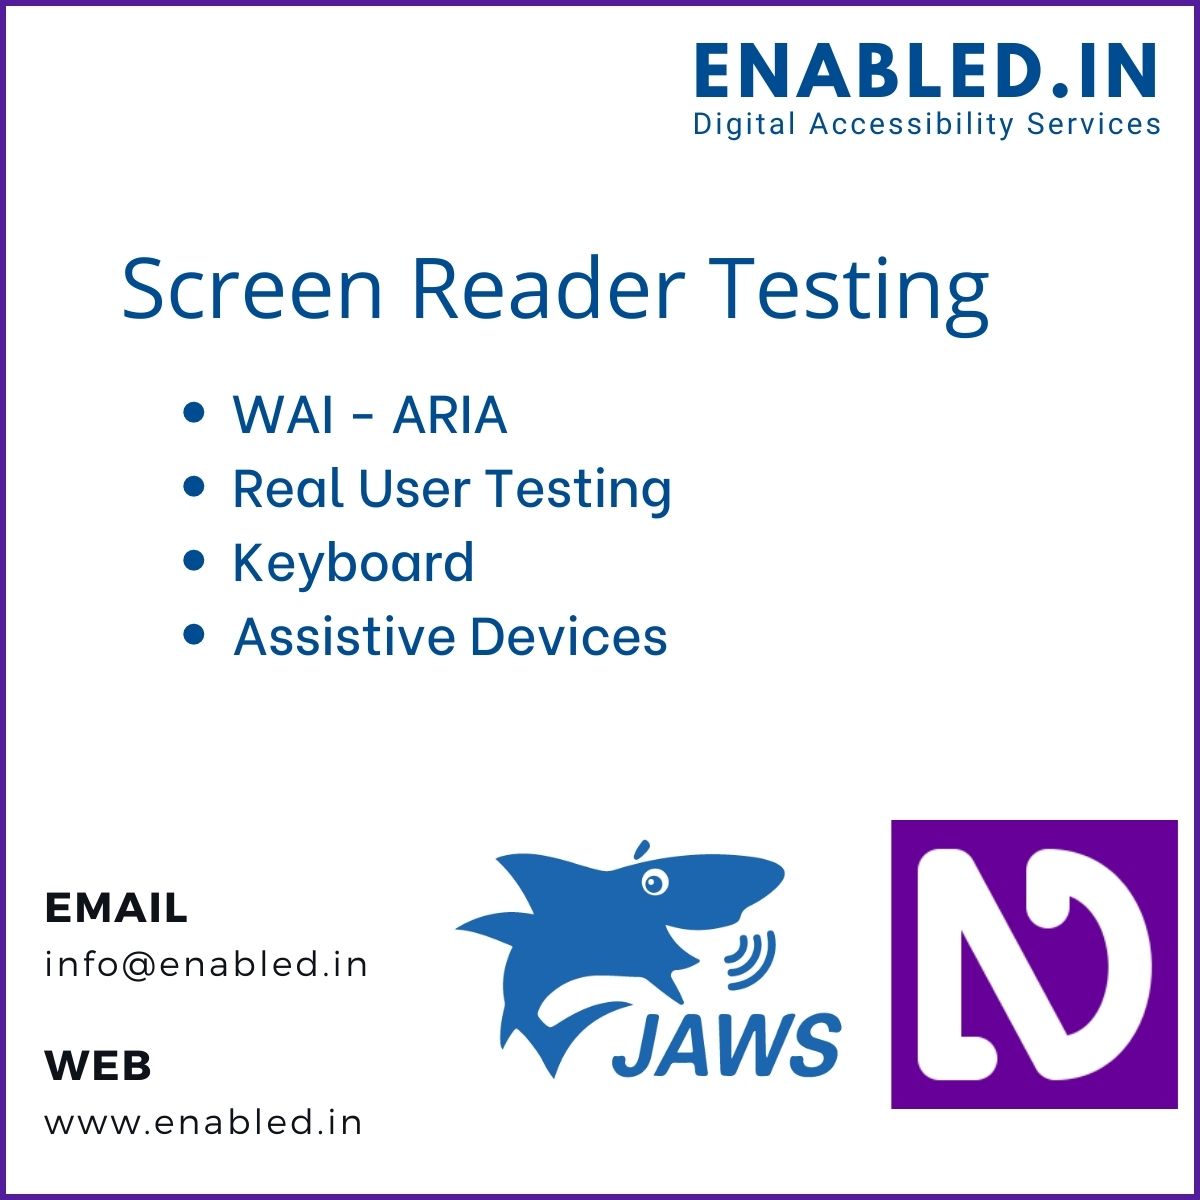 Screen Reader Testing - JAWS and NVDA